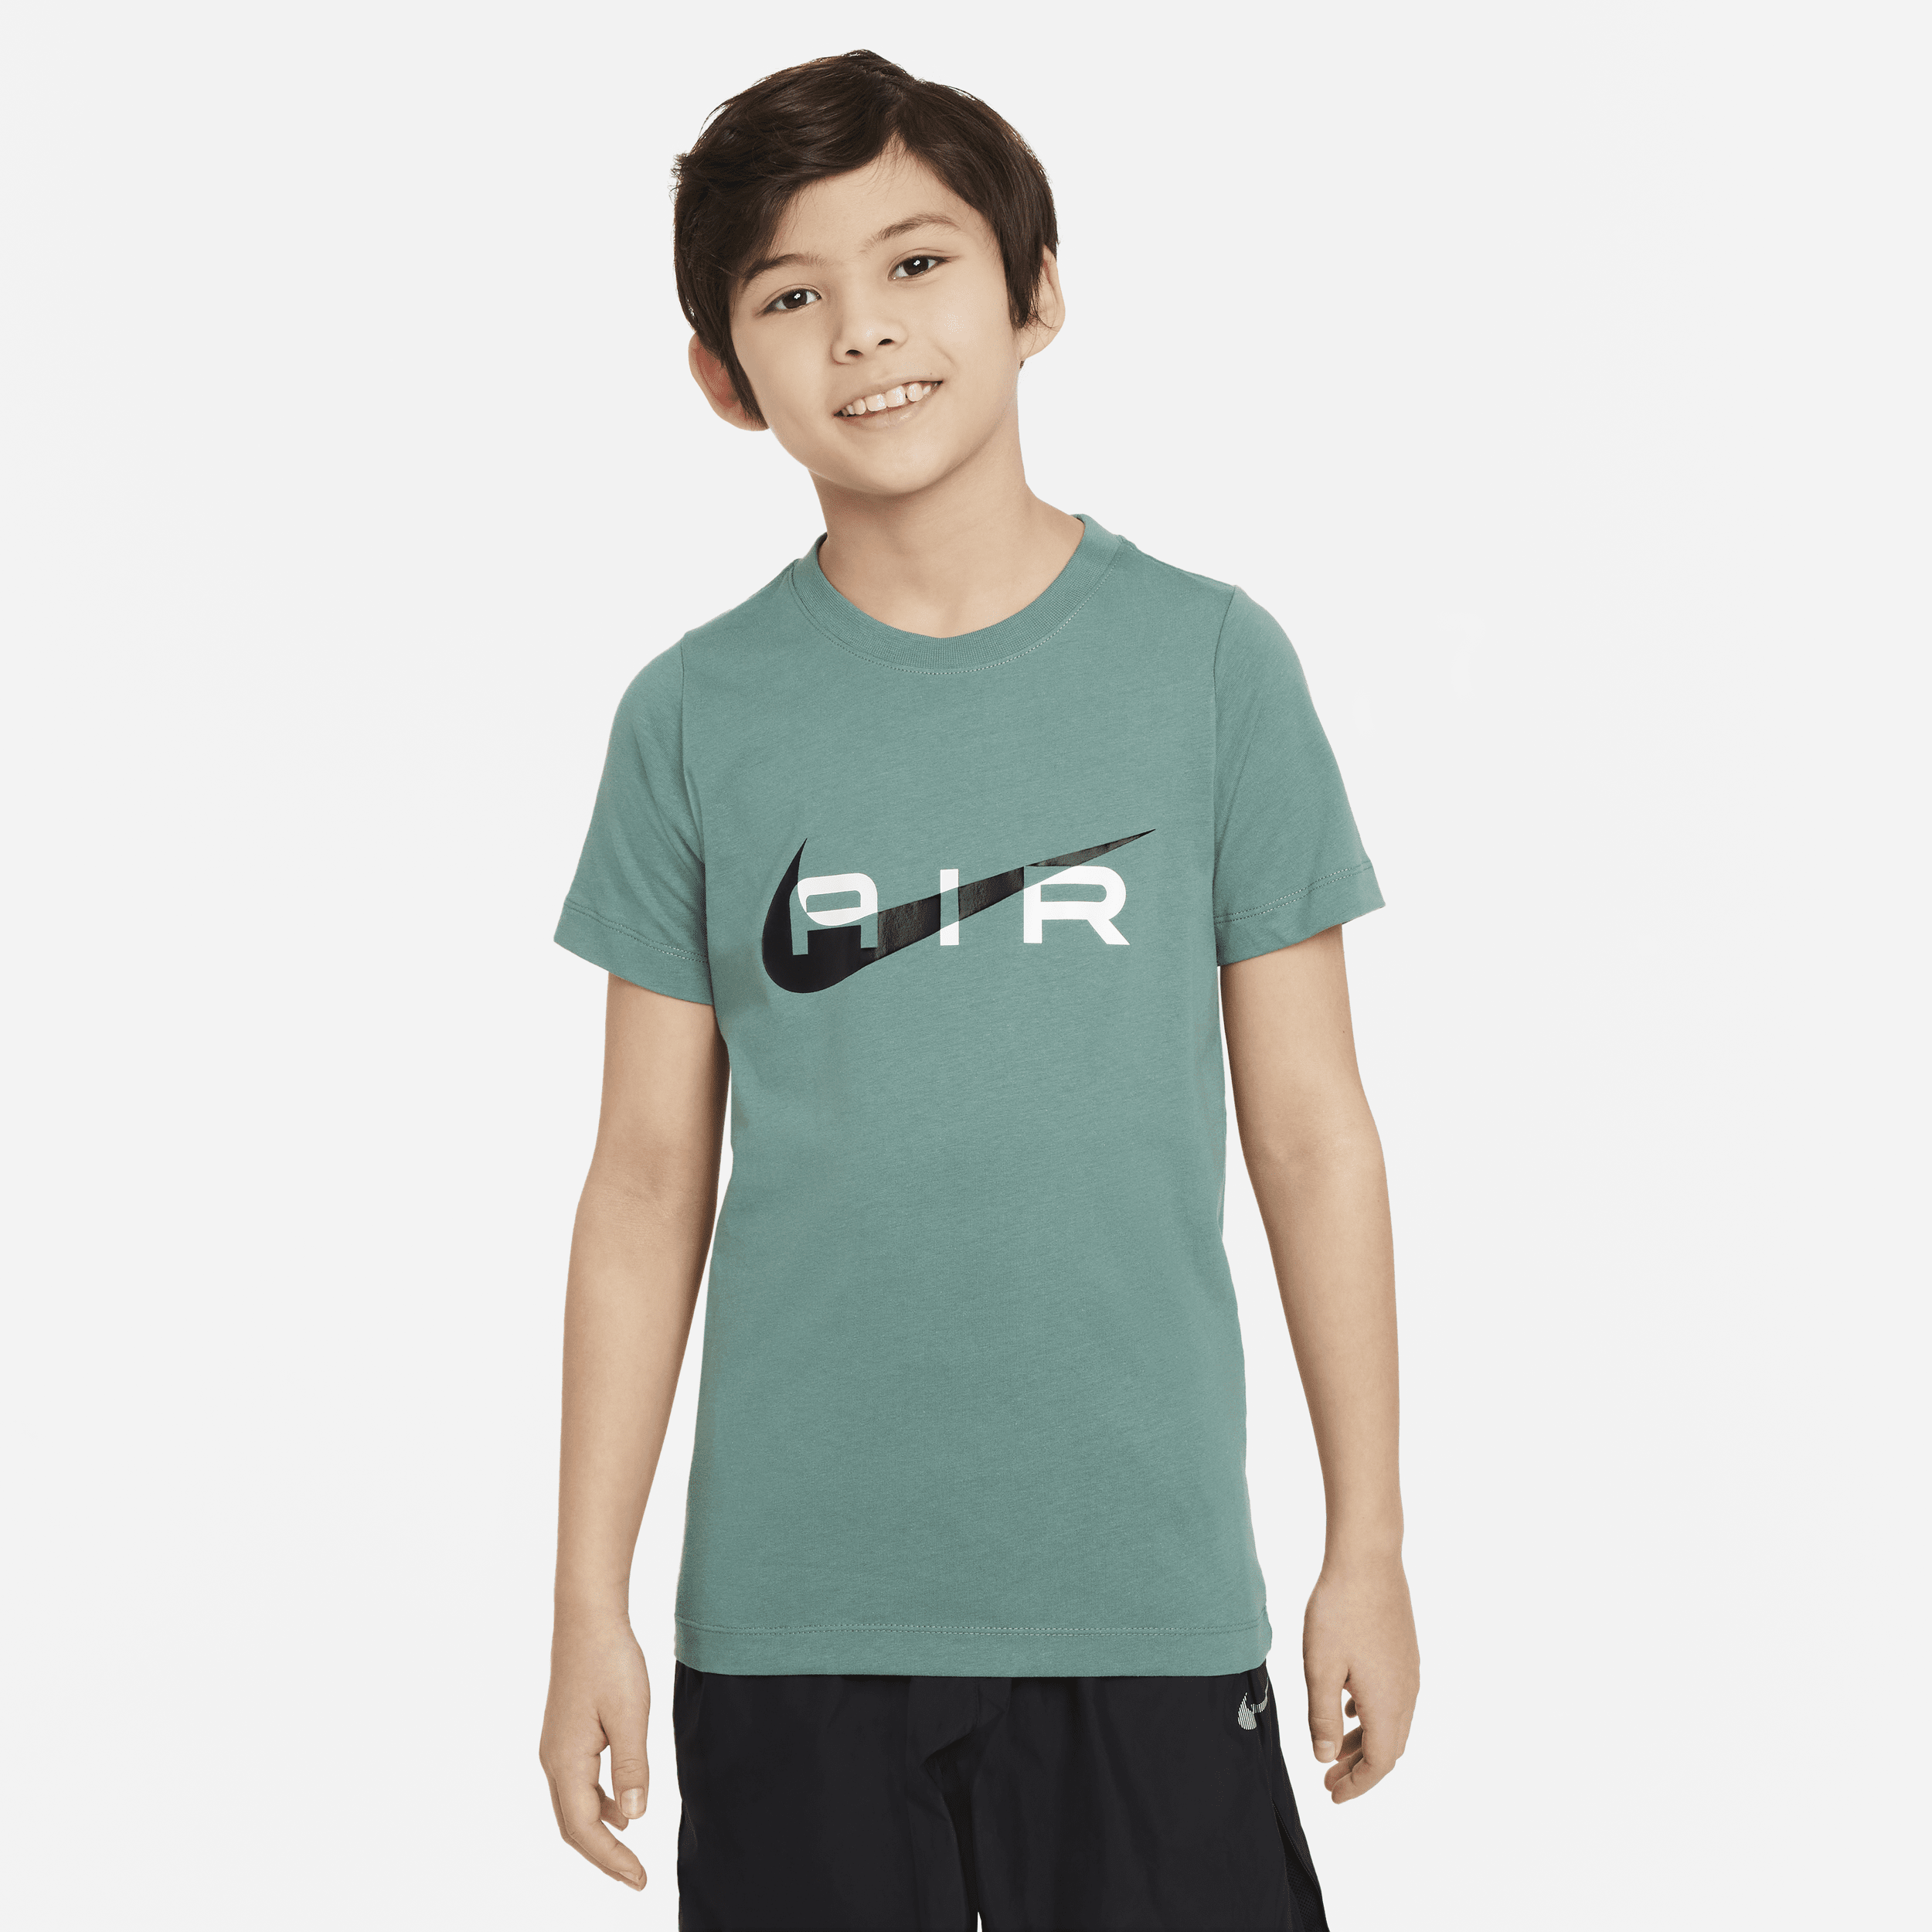 Nike Air T-shirt voor jongens - Groen